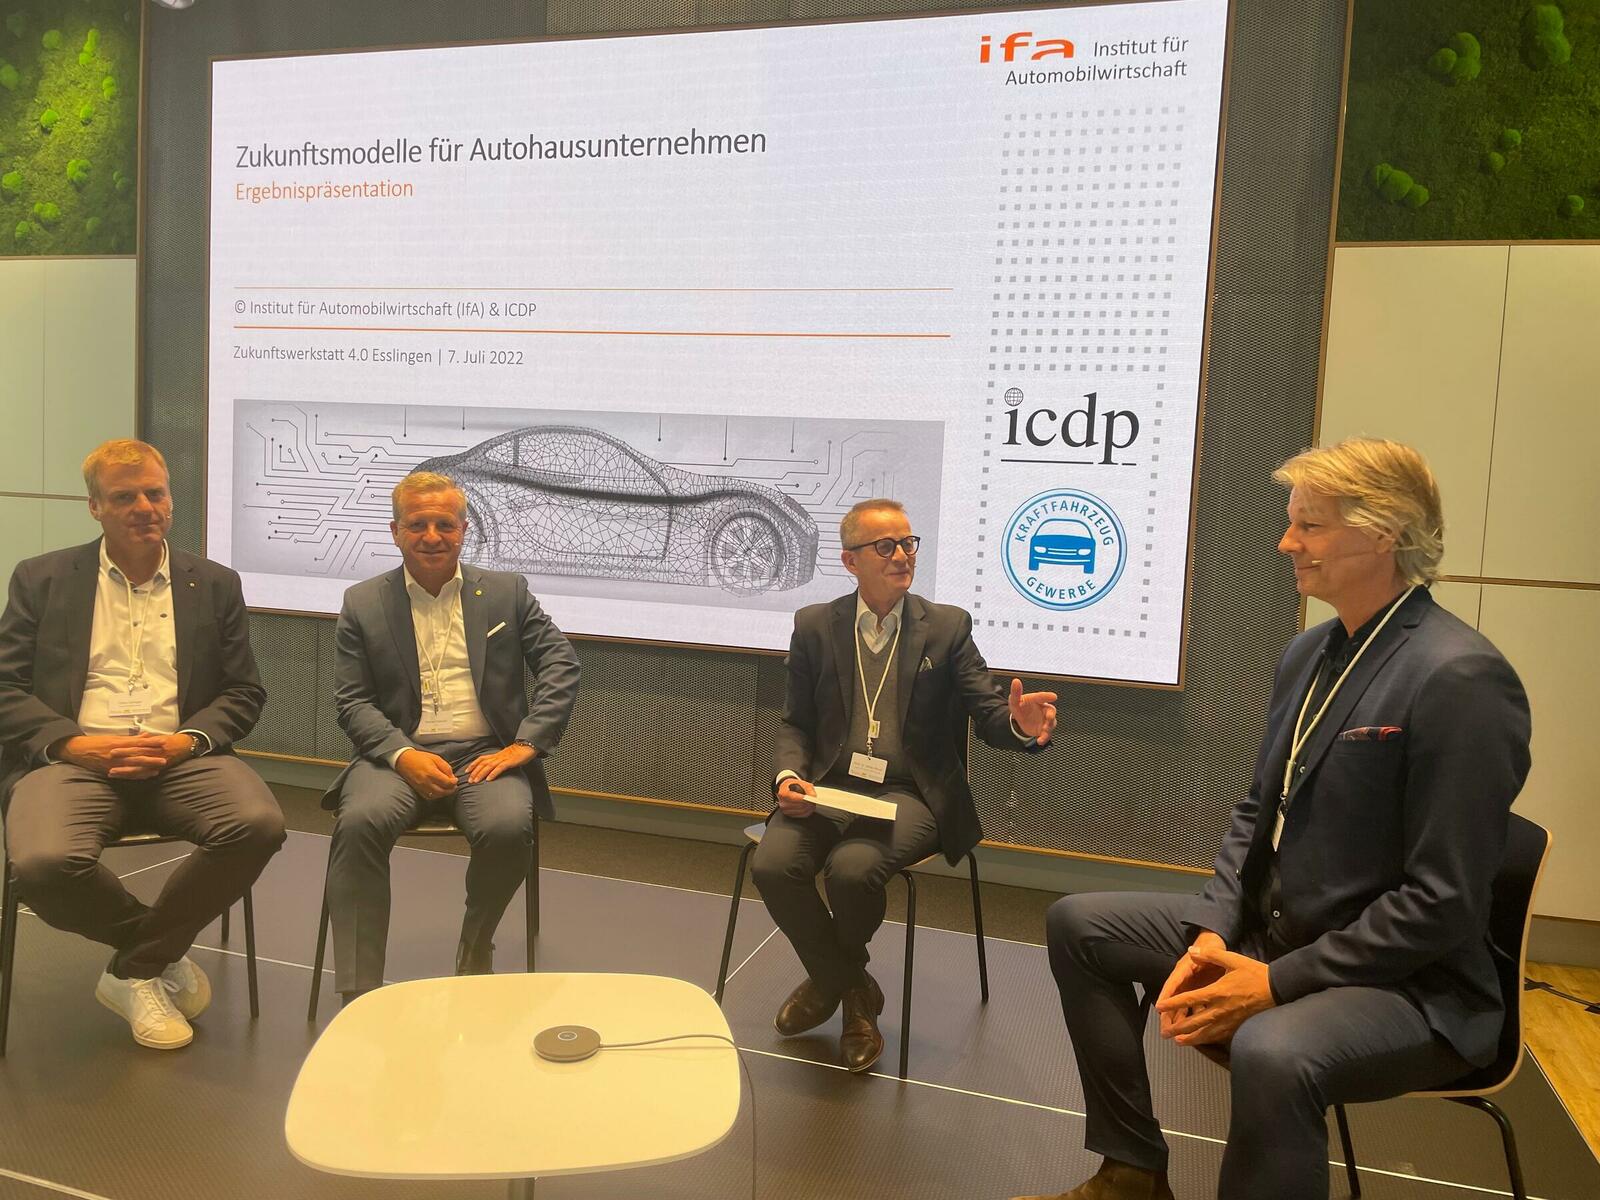 Oliver Zeilinger (Auto Zeilinger), Thomas Peckruhn (Autohaus Liebe), Prof. Dr. Stefan Reindl (ifa) und Michael Hedtke (Autohaus Hedtke) sprechen über die ZDK-Studie.